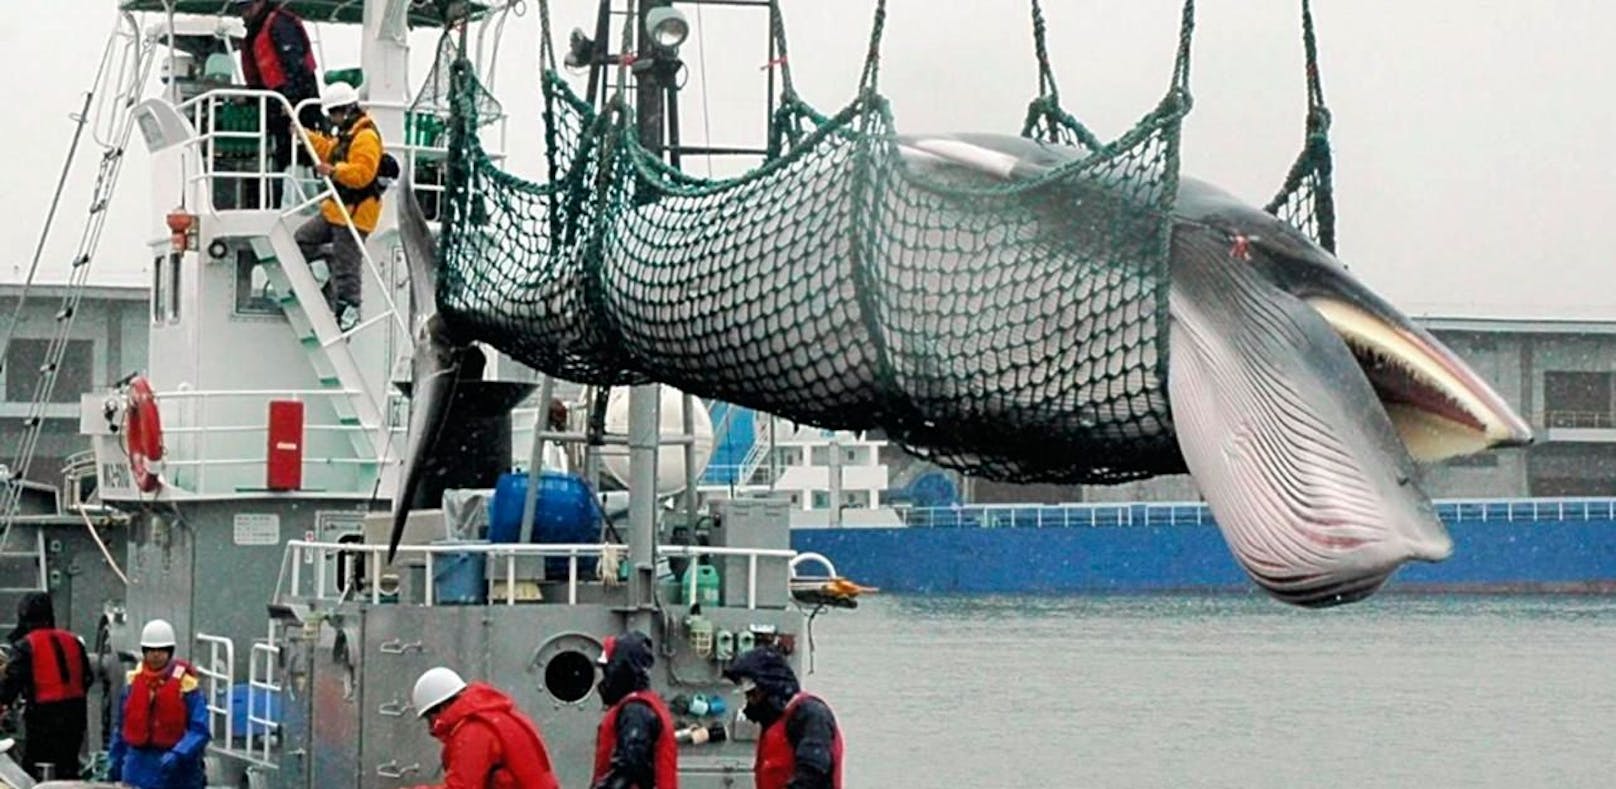 
Japan will zum kommerziellen Walfang zurückkehren: Getöteter Wal wird auf ein Schiff verladen. 